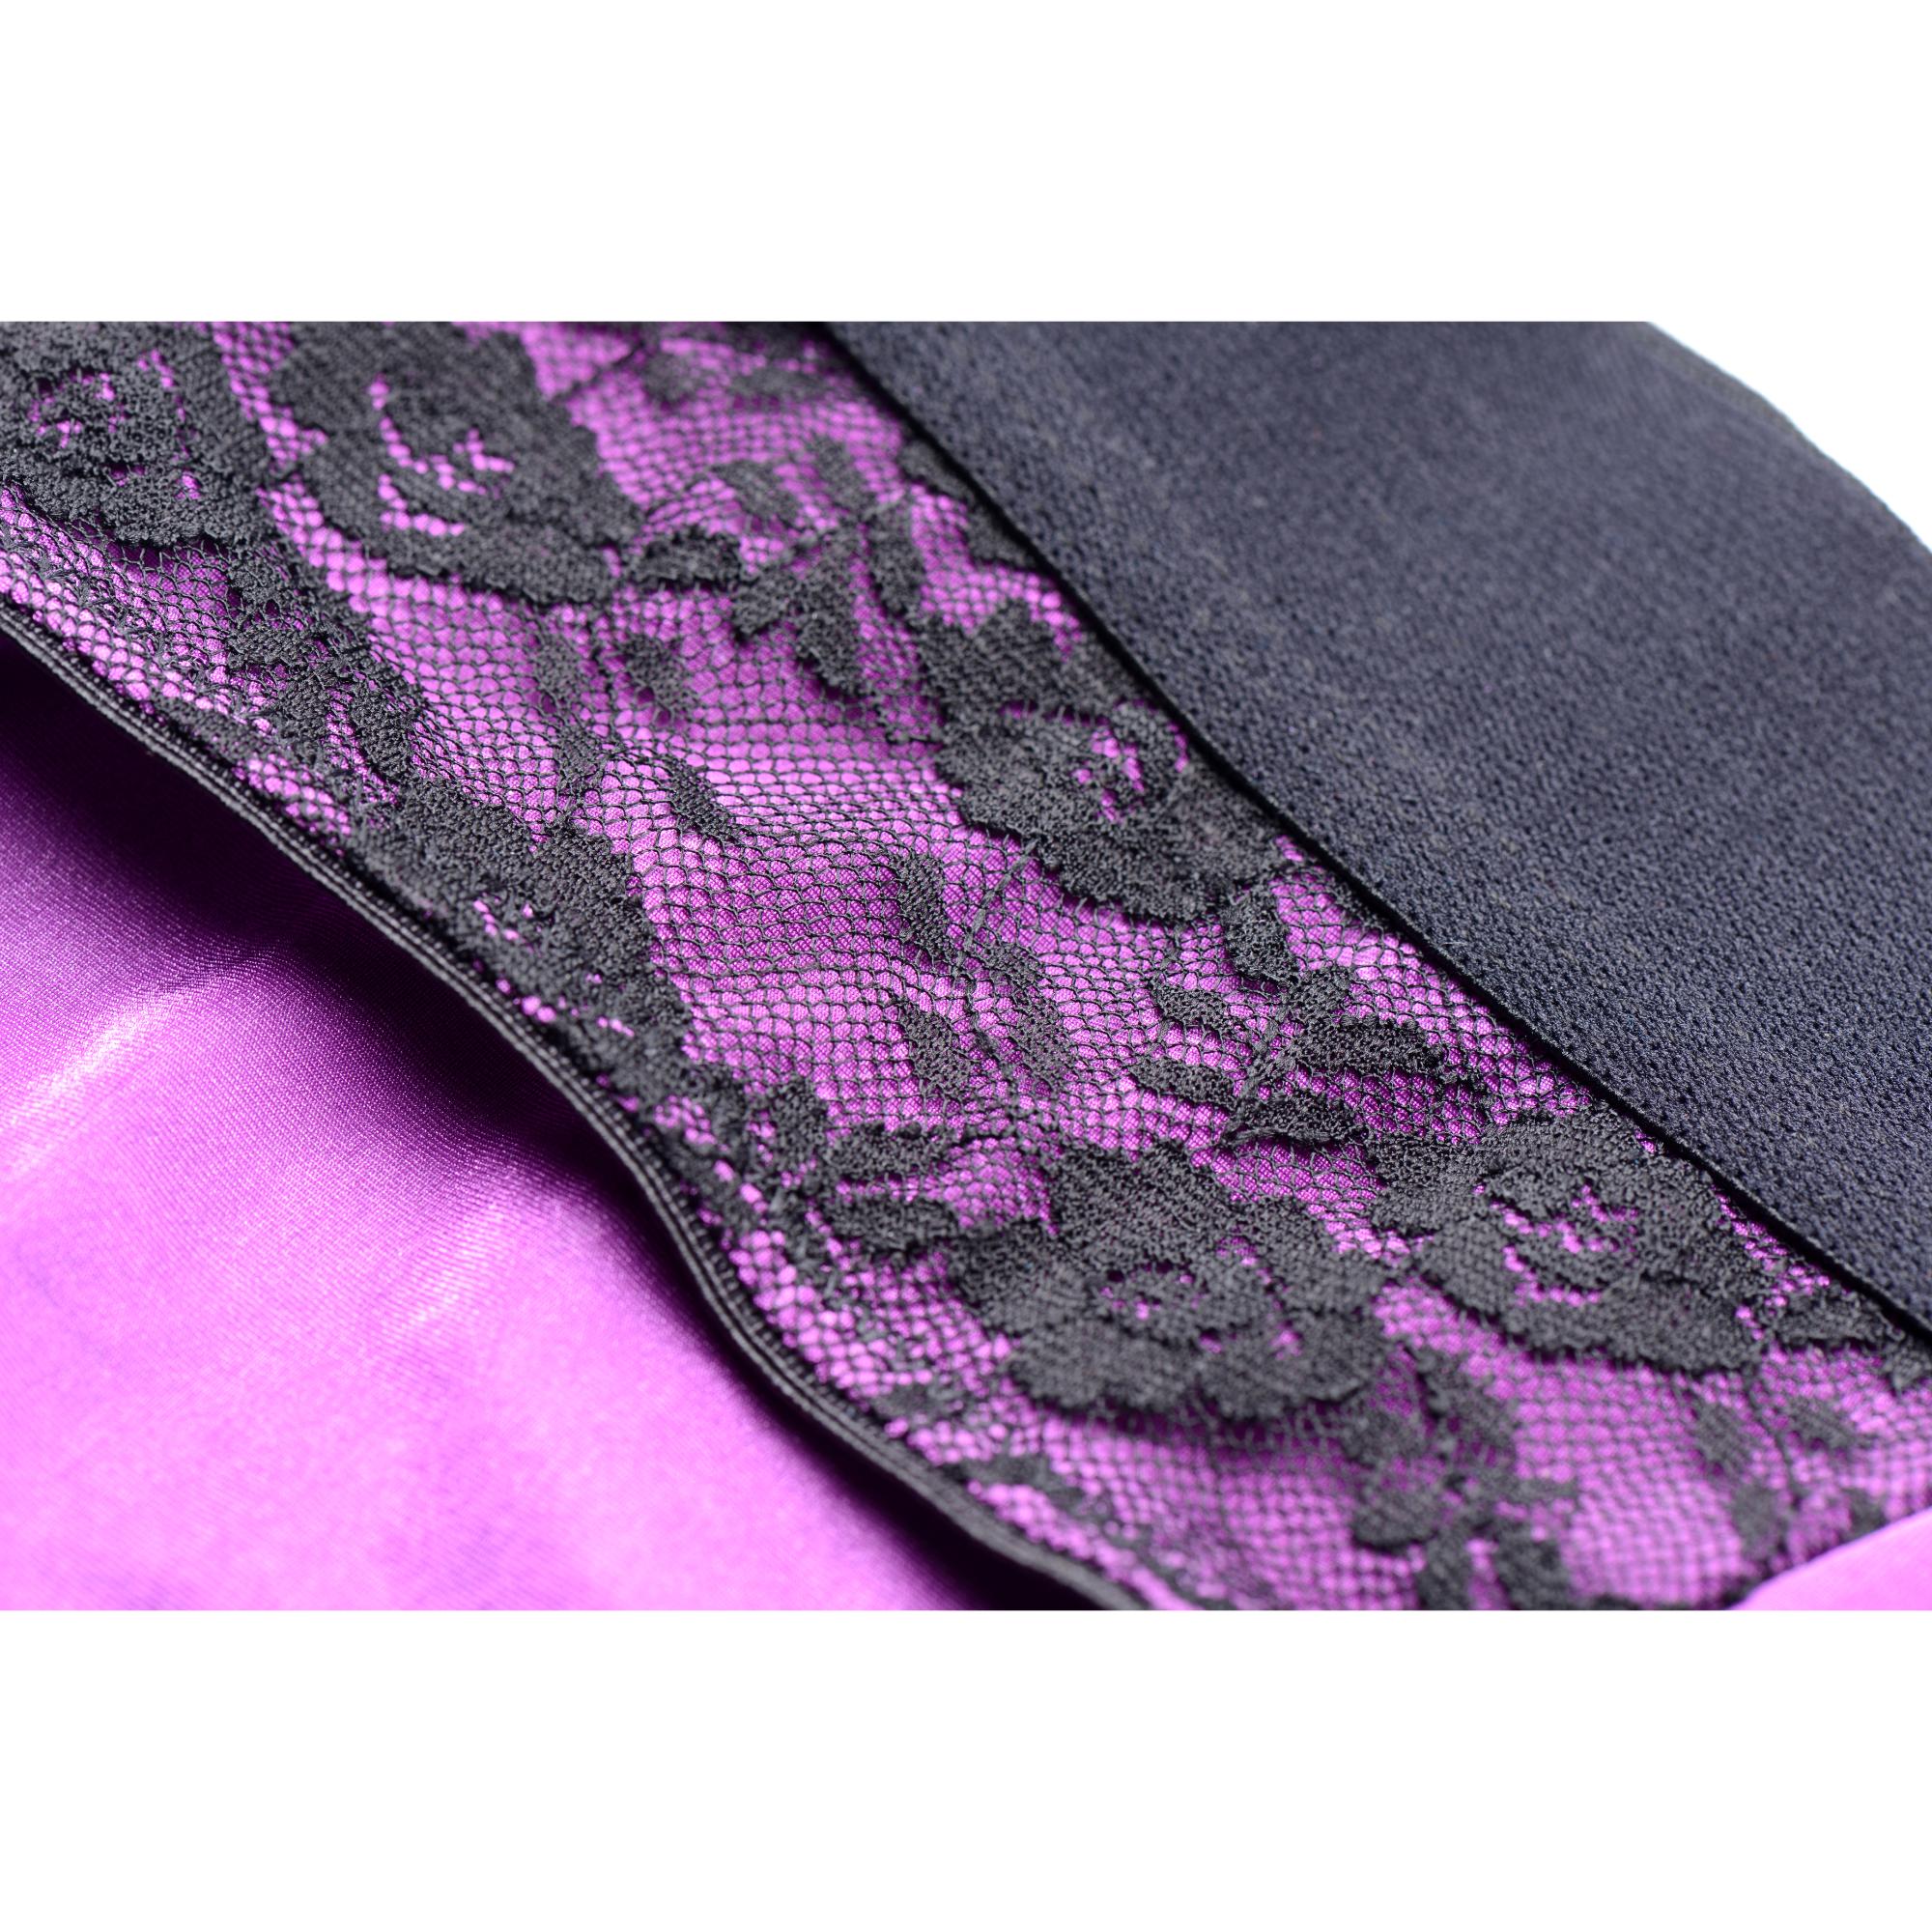 Strap U Lace Envy Crotchless Panty Harness - Purple